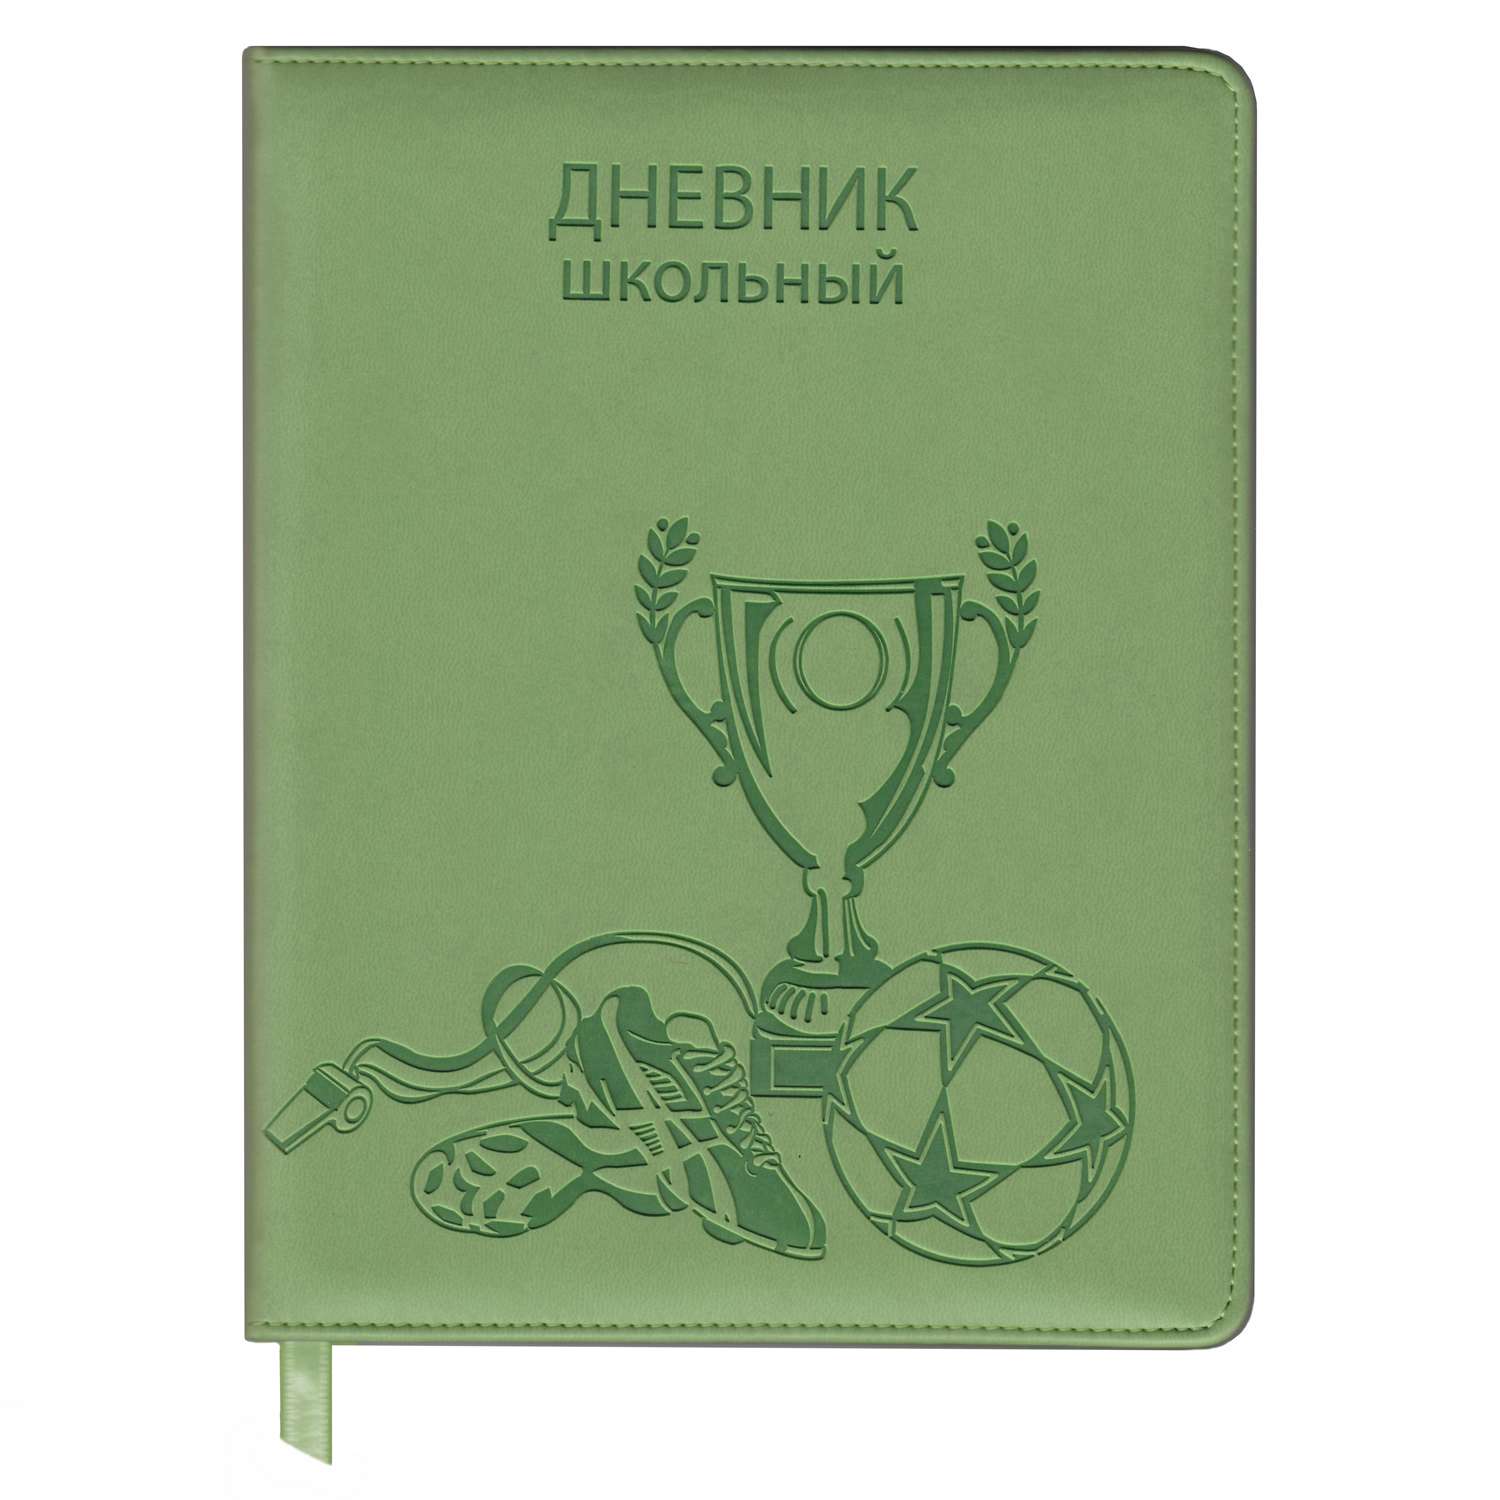 Дневник школьный Феникс + Футбол Зелёный - фото 1